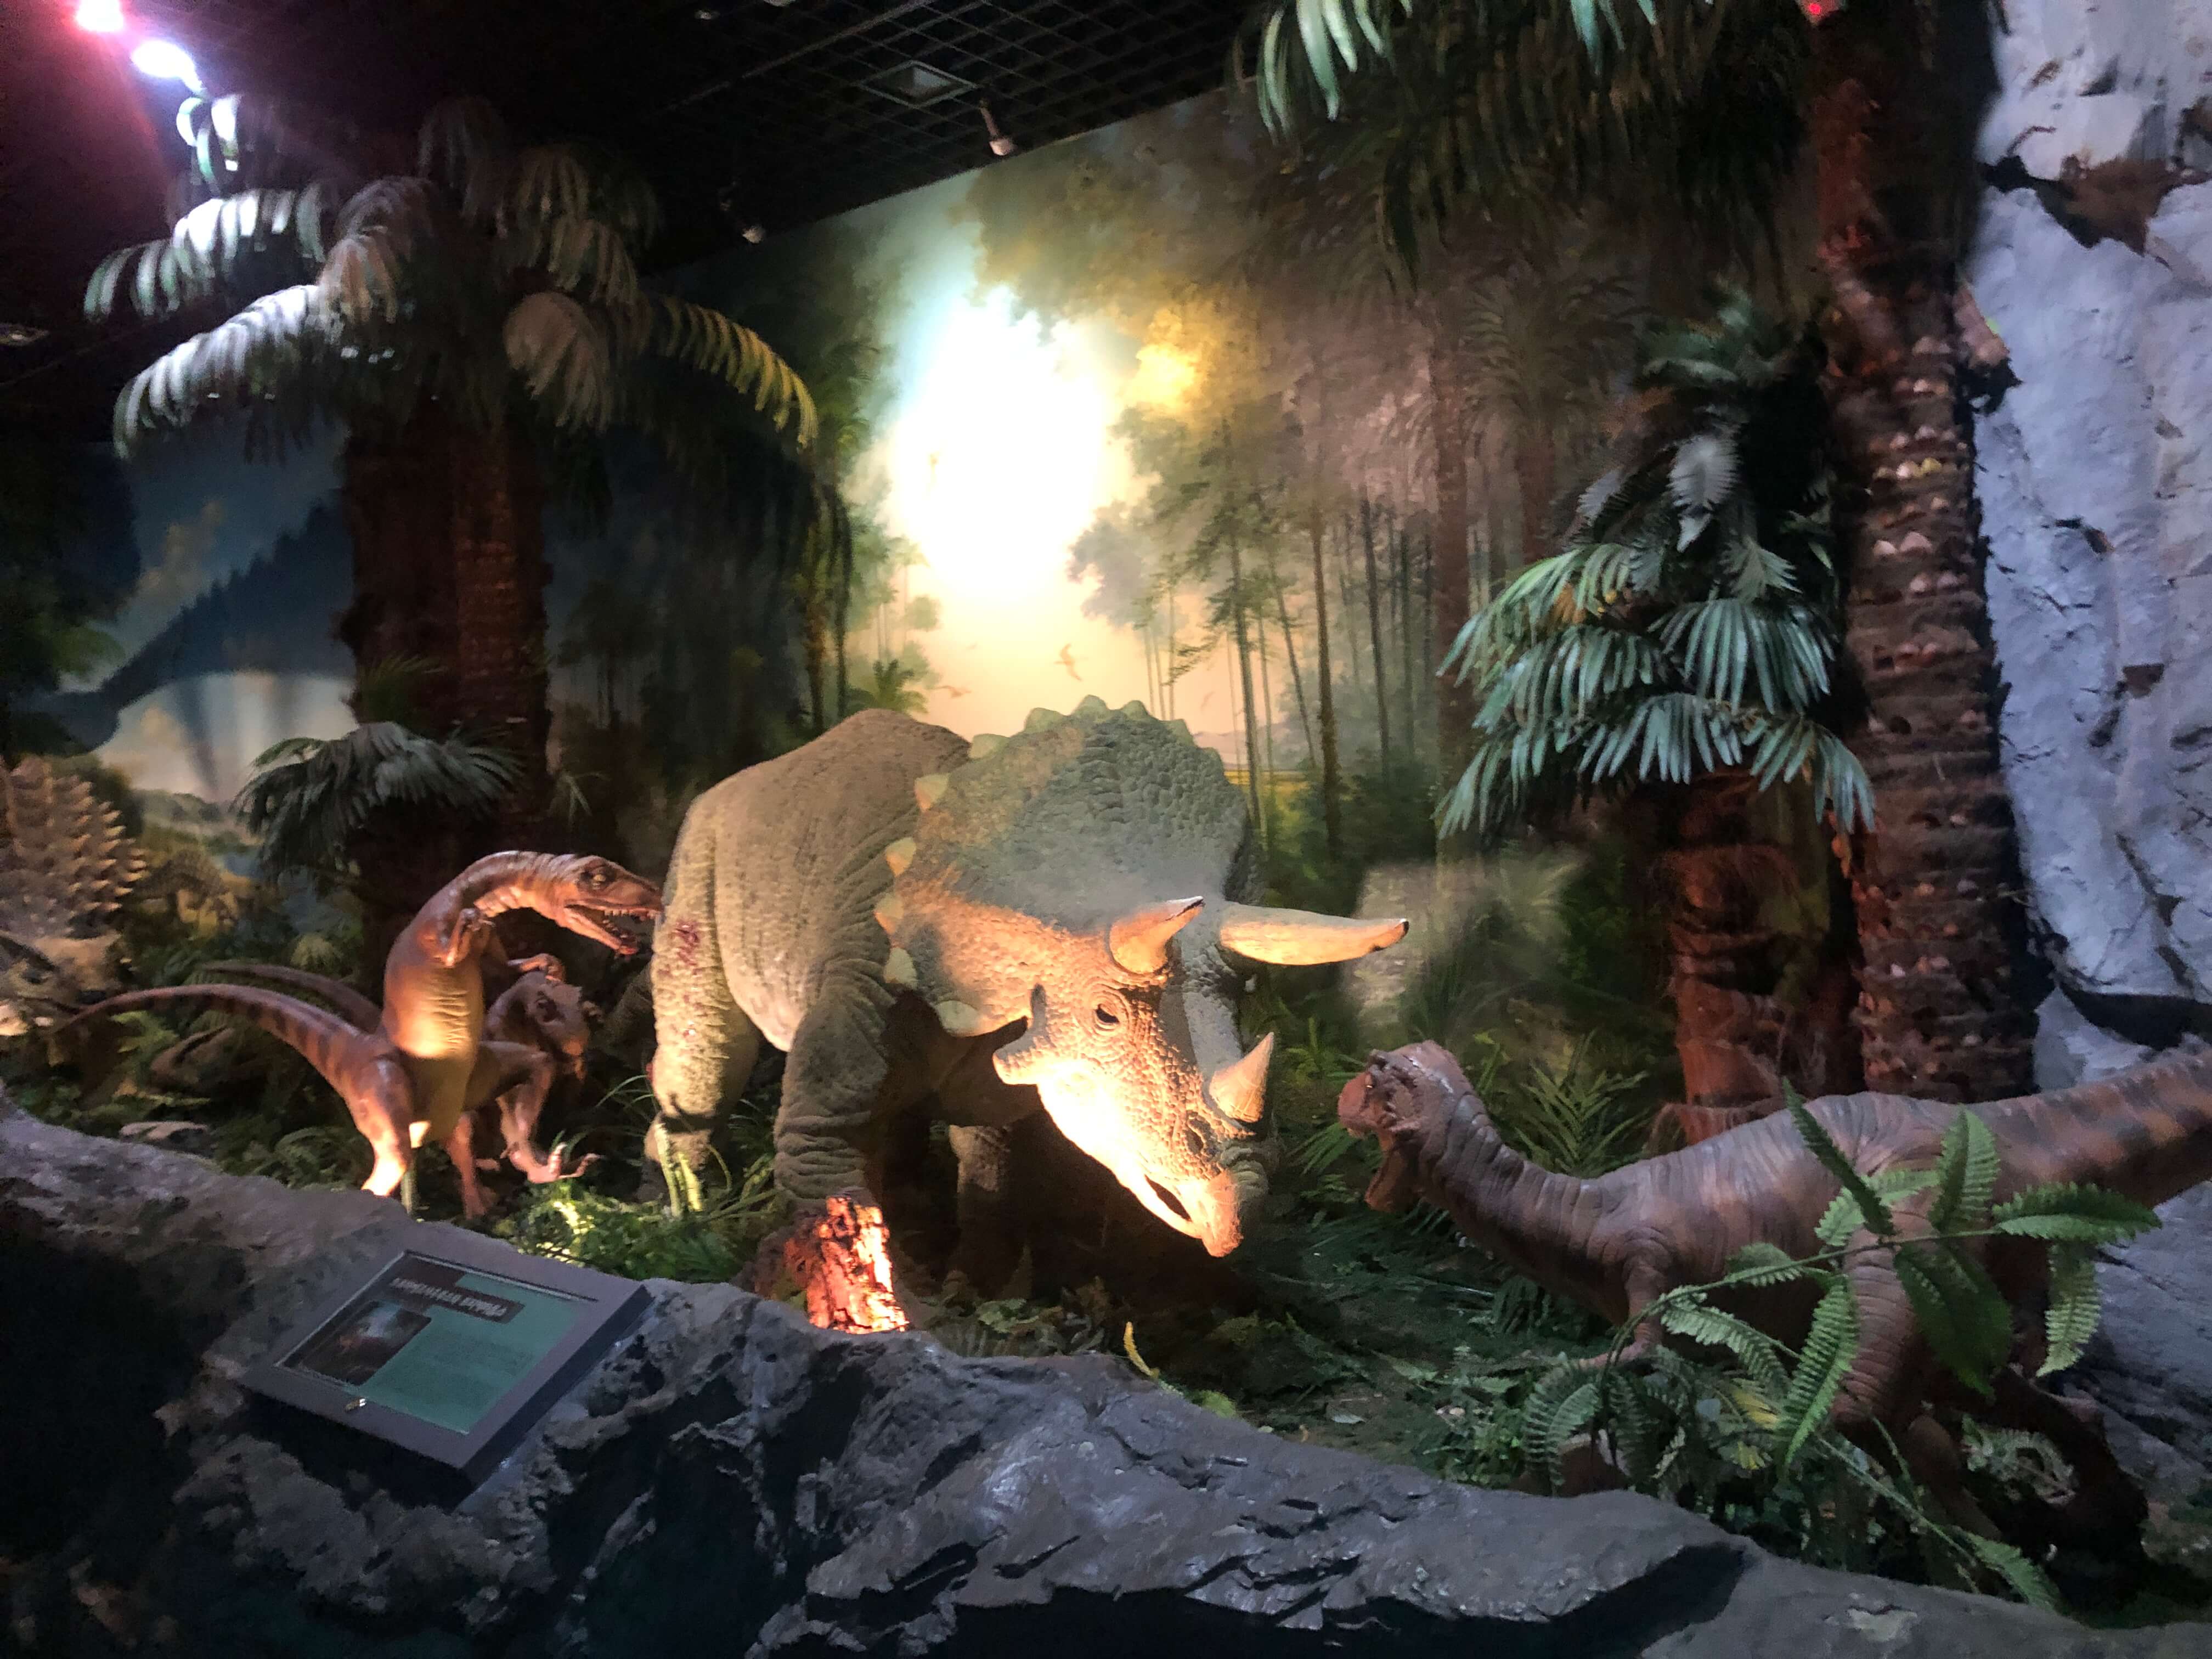 민수랜드-고성공룡박물관 움직이는 공룡